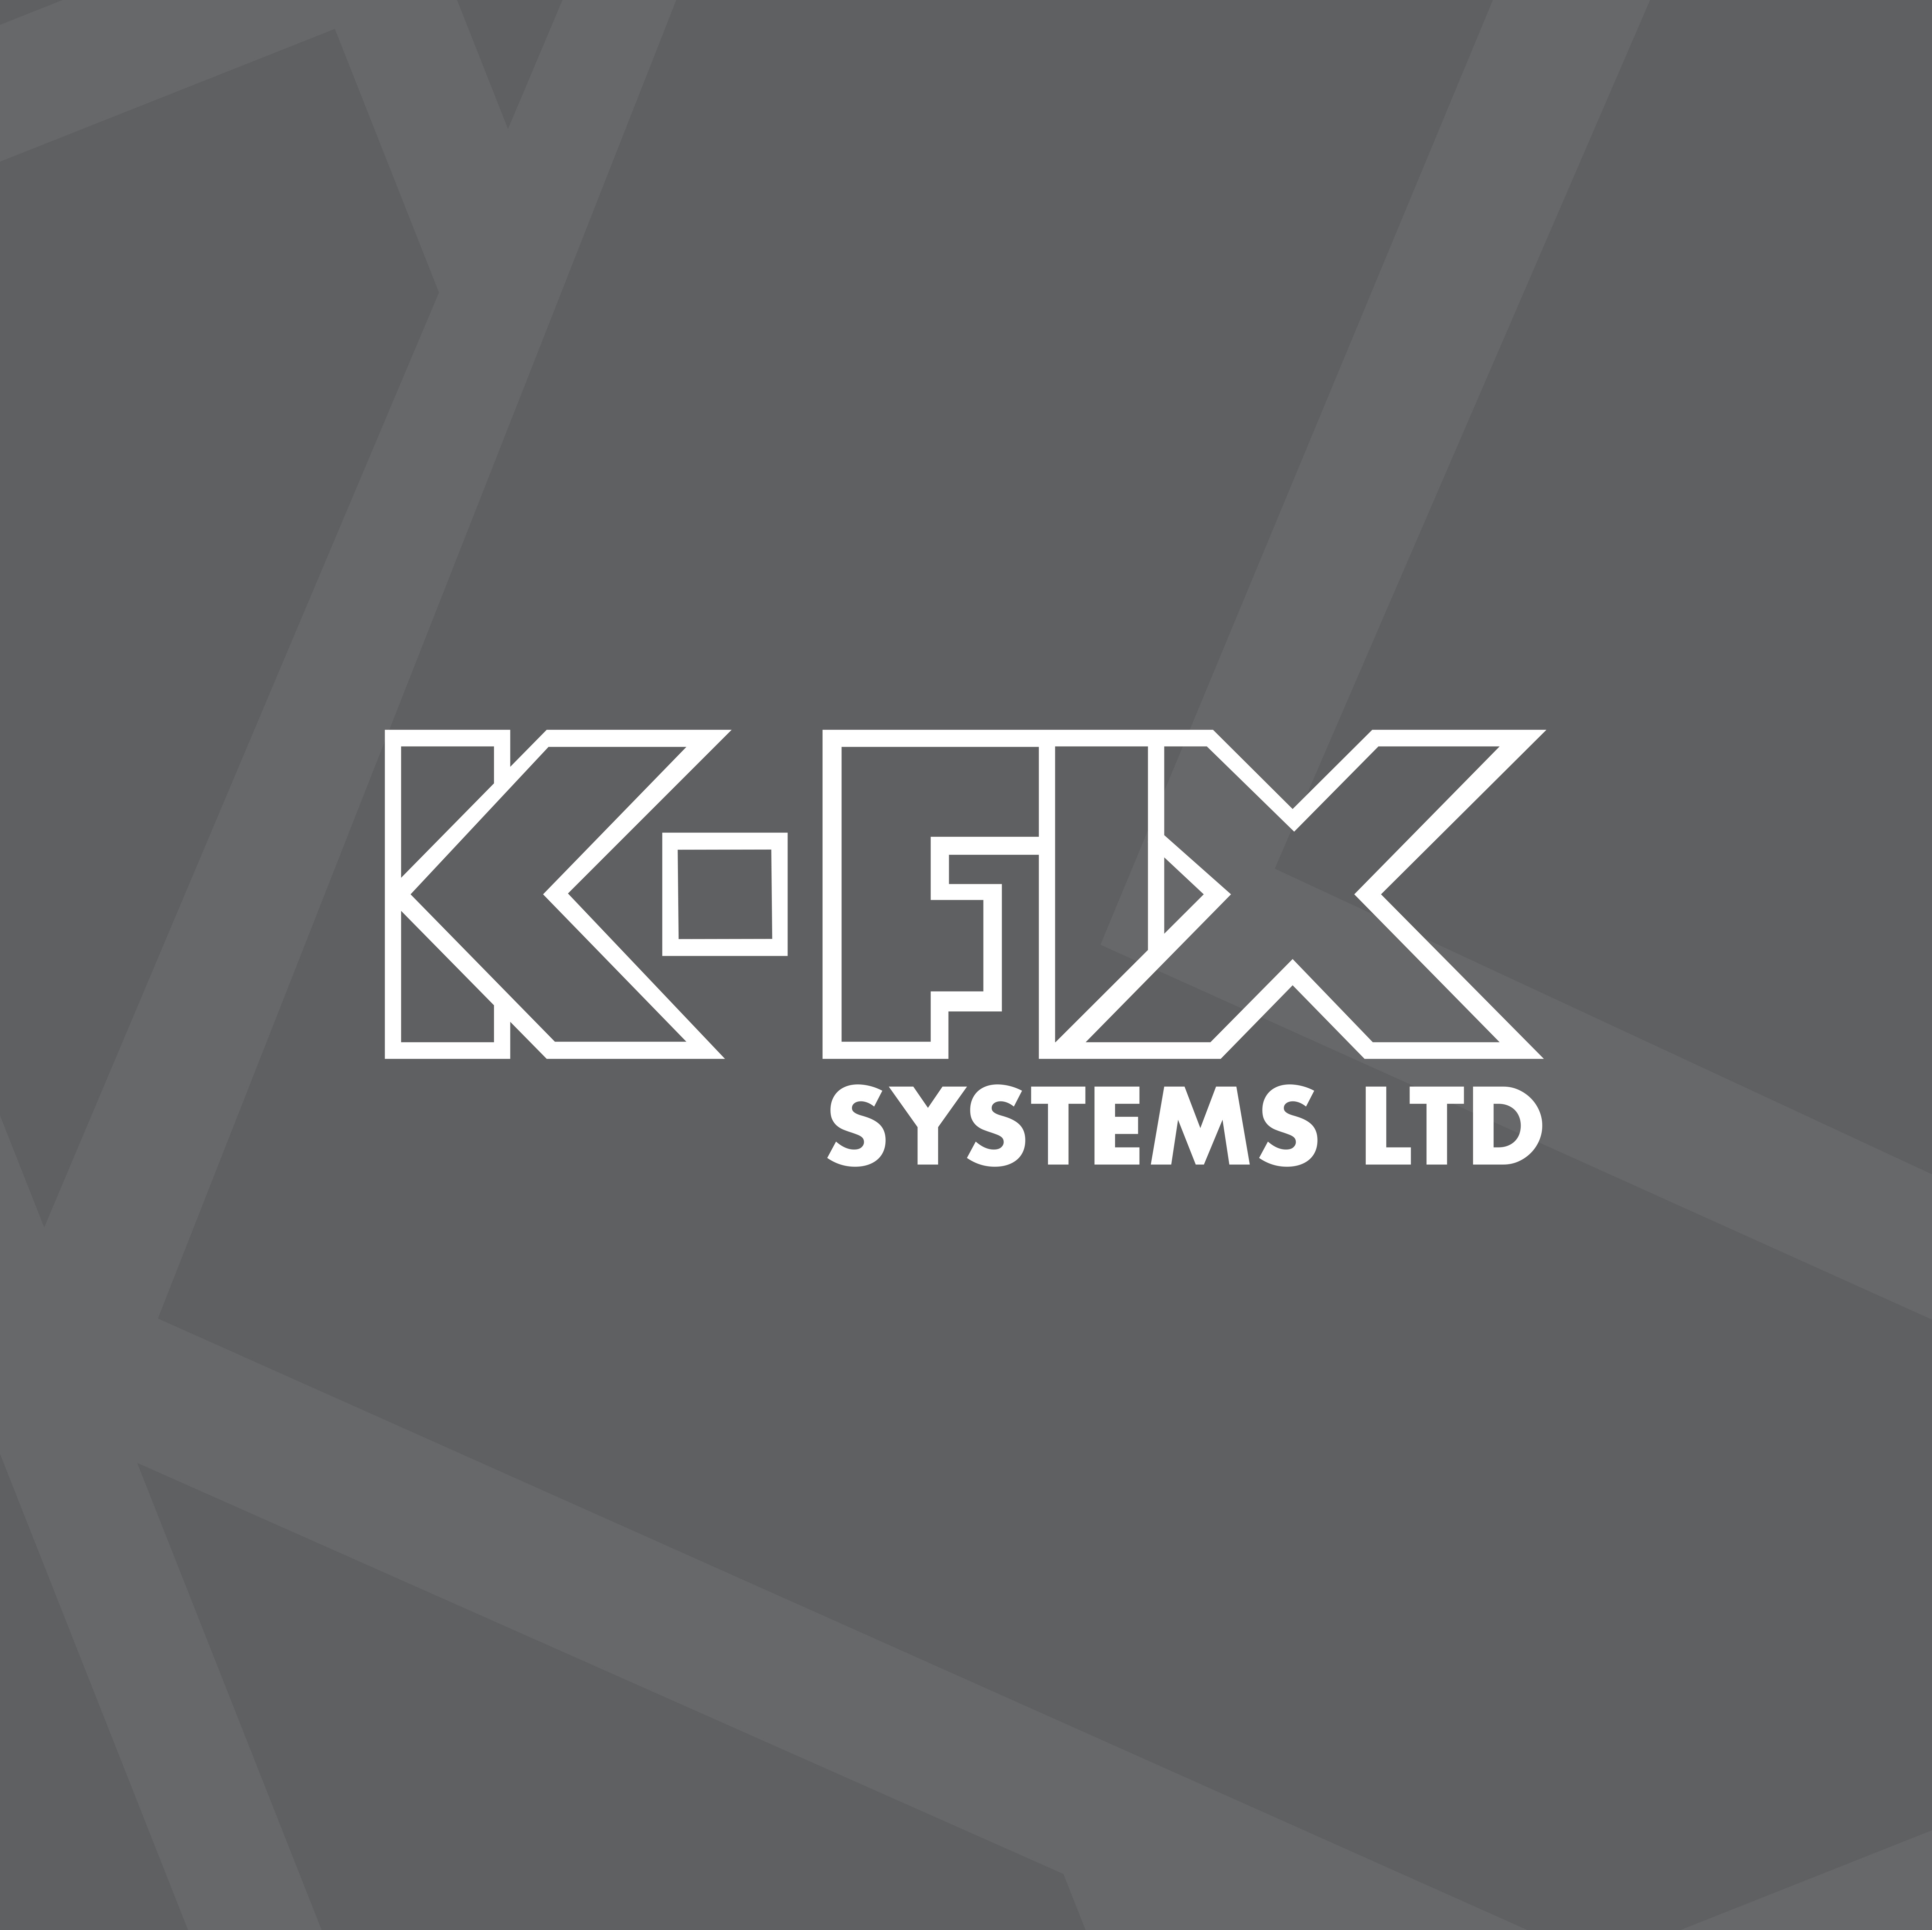 K-Fix Systems Ltd